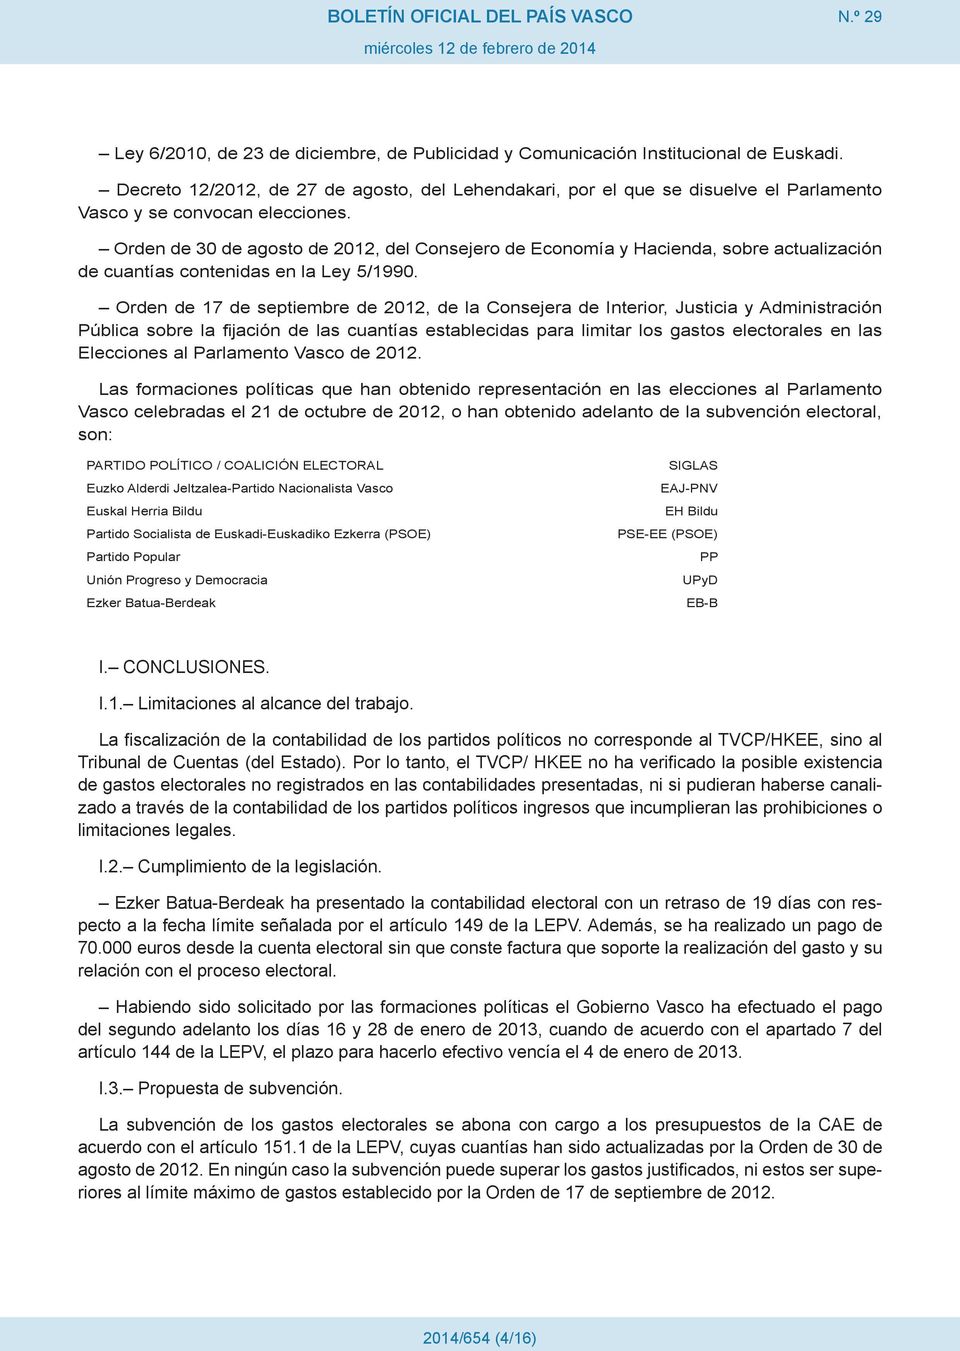 Orden de 30 de agosto de 2012, del Consejero de Economía y Hacienda, sobre actualización de cuantías contenidas en la Ley 5/1990.